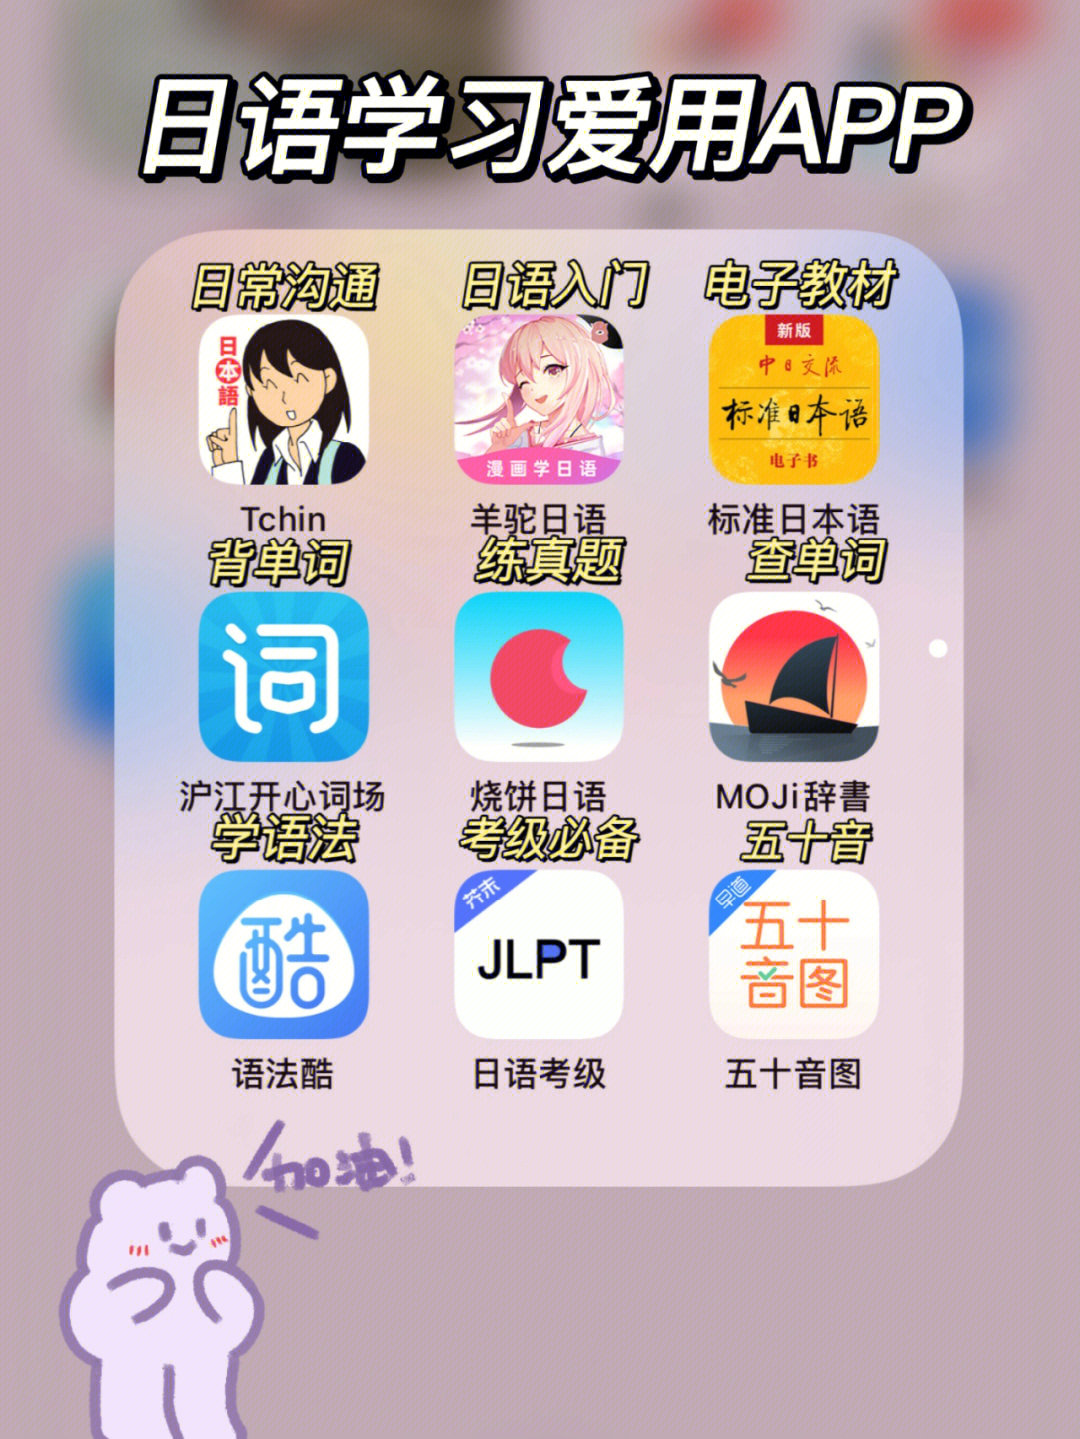 对于学习日语的小伙伴们,找到合适好用的日语学习app真的能让自己学习